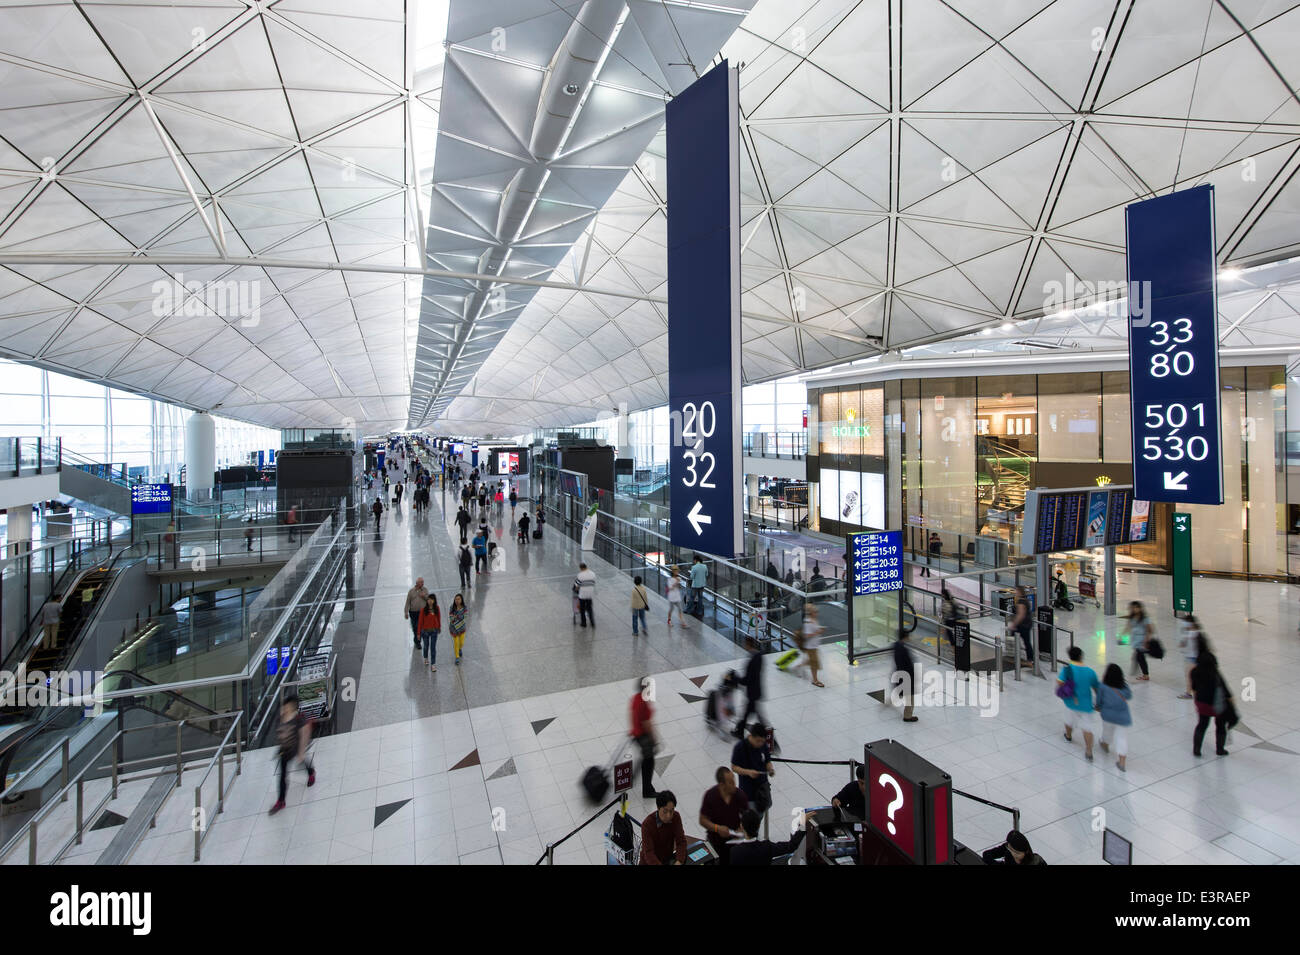 Hong Kong airport terminal interior. 29/4/2014 Stock Photo